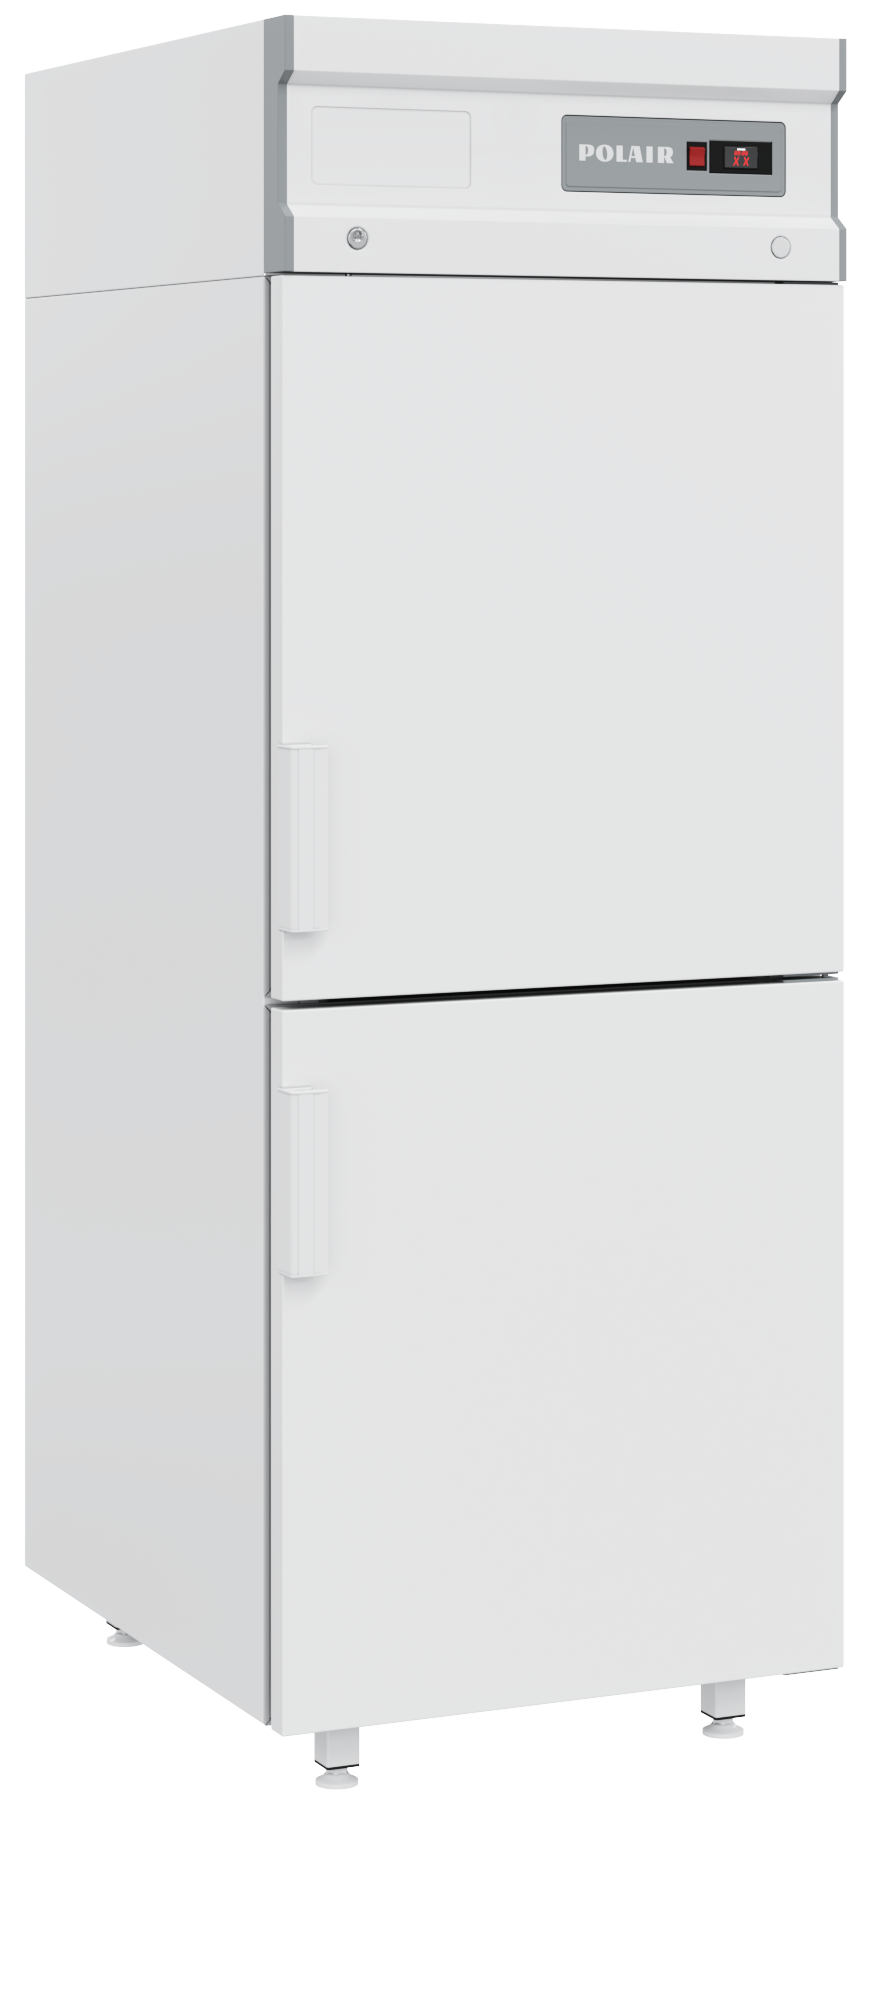 Шкаф холодильный среднетемпературный
CM107hd-S